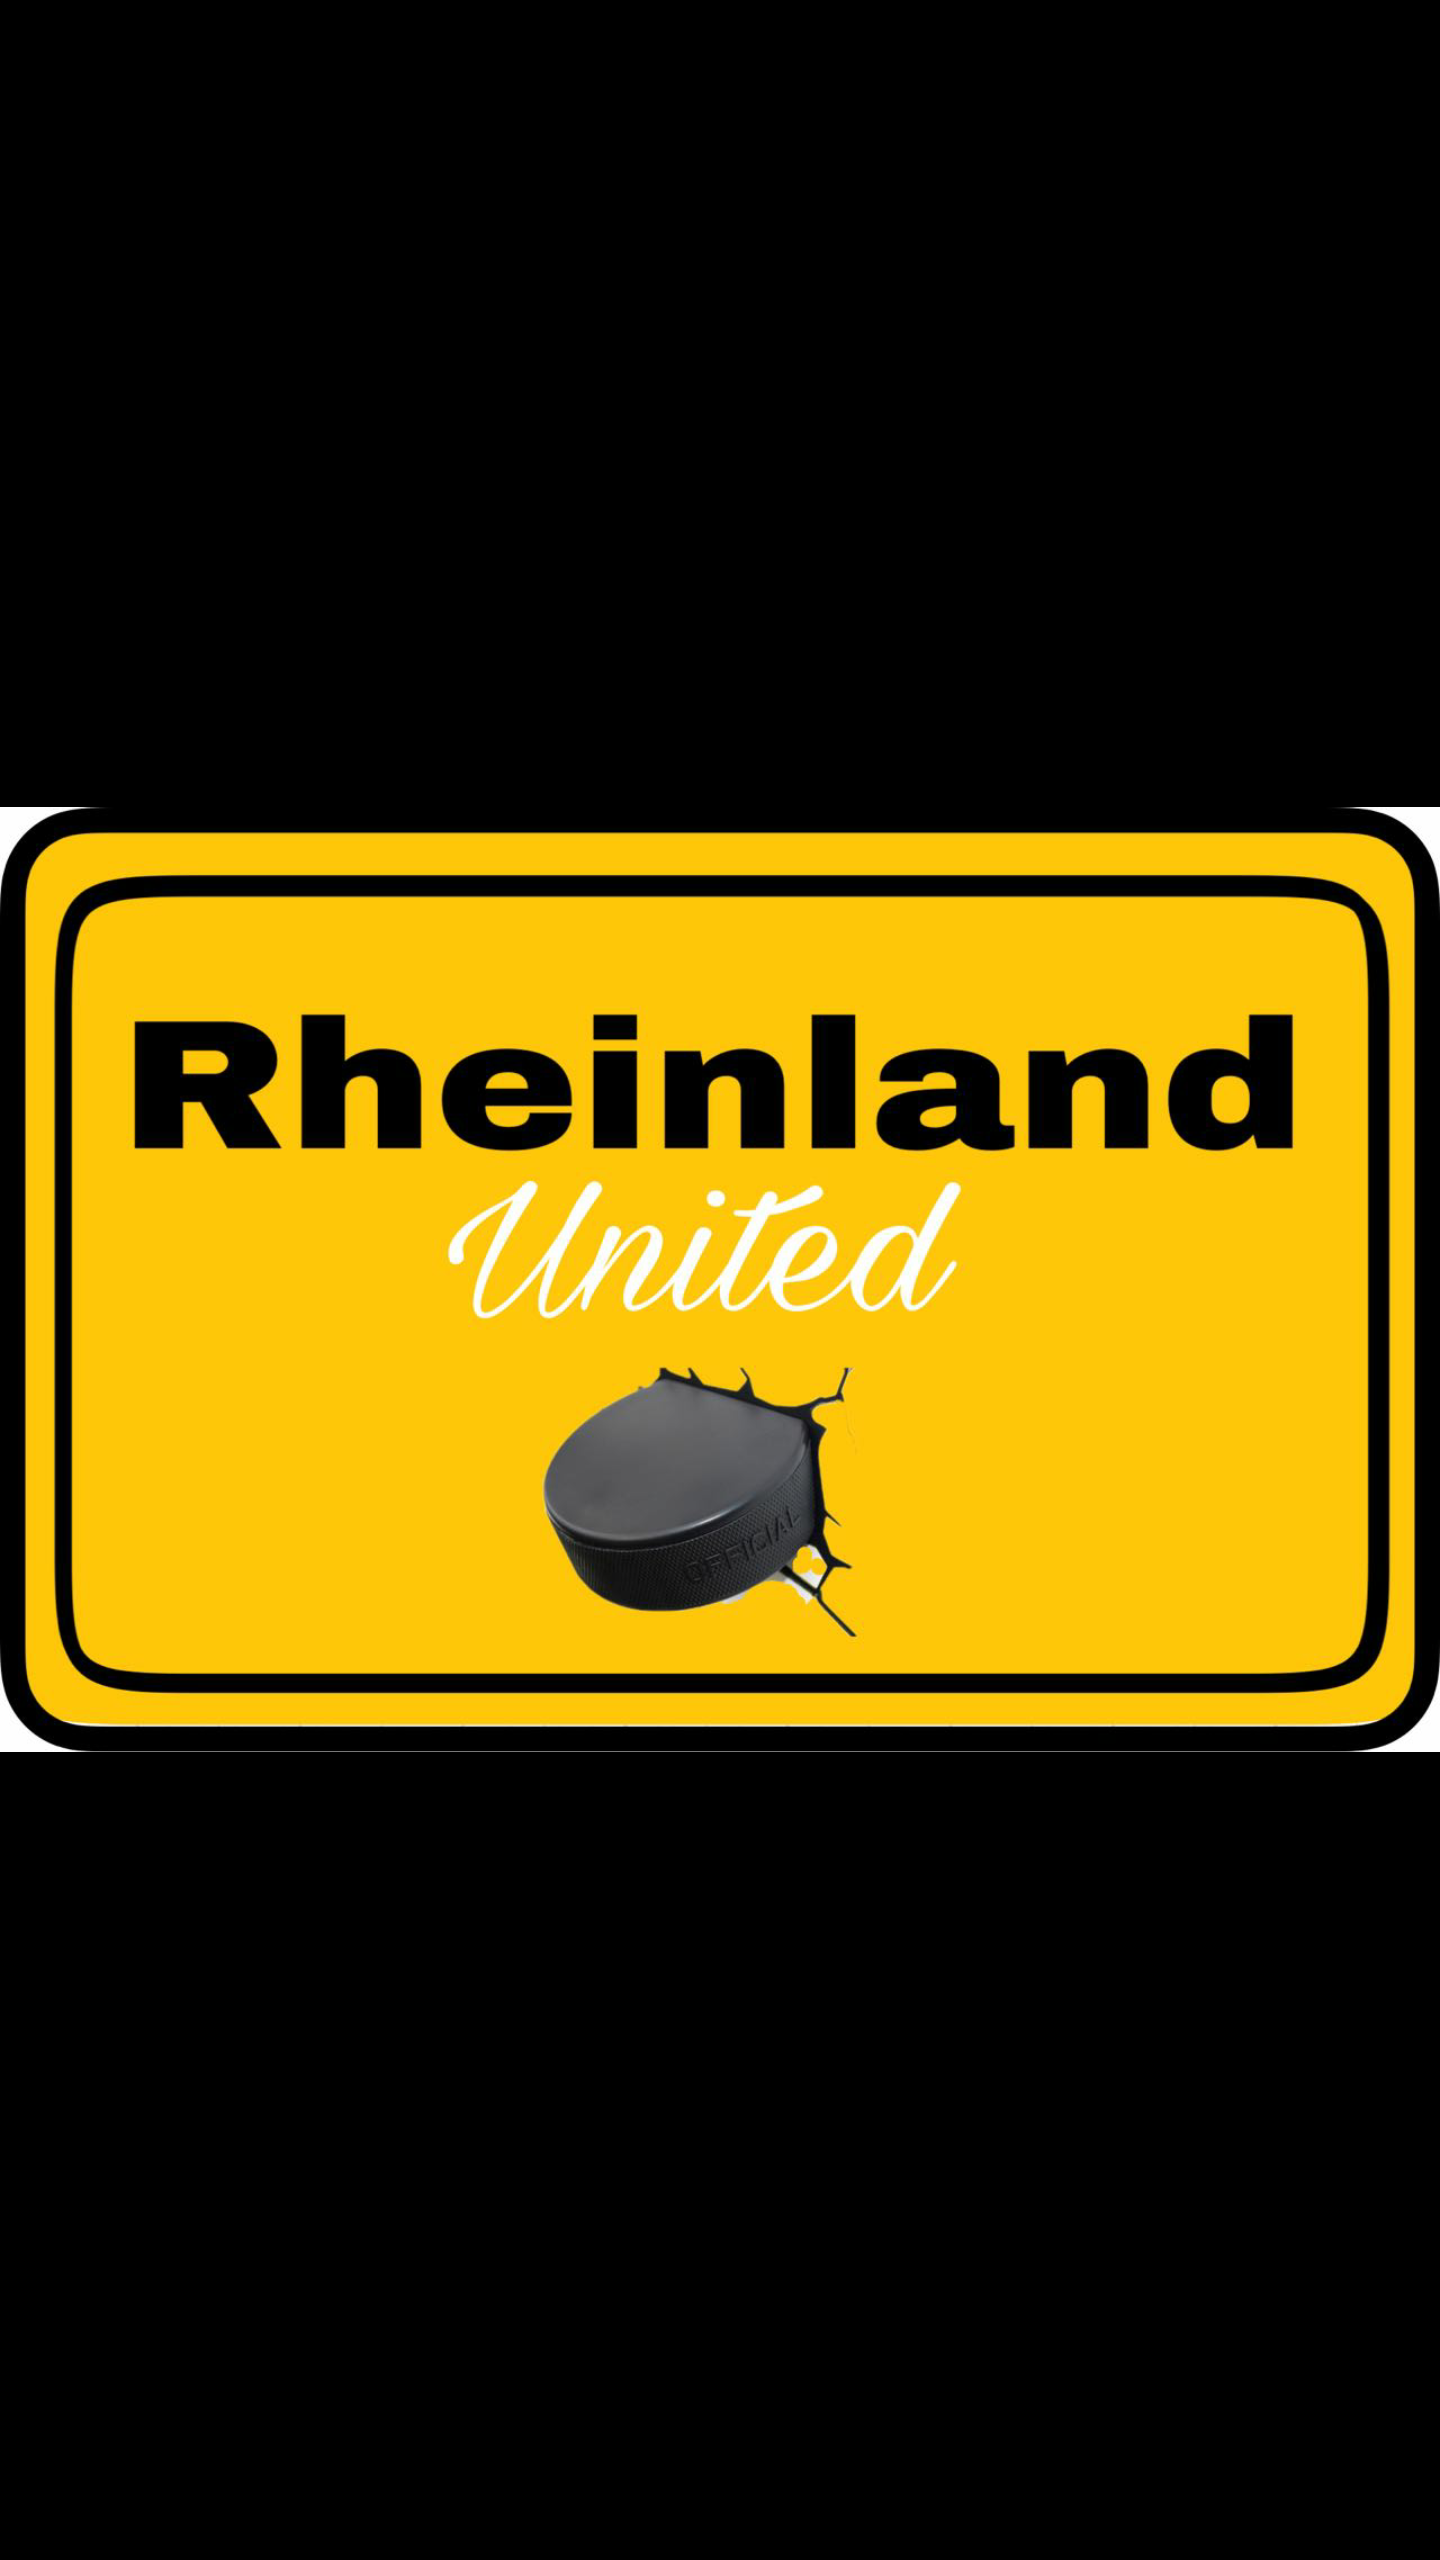 rheinland united